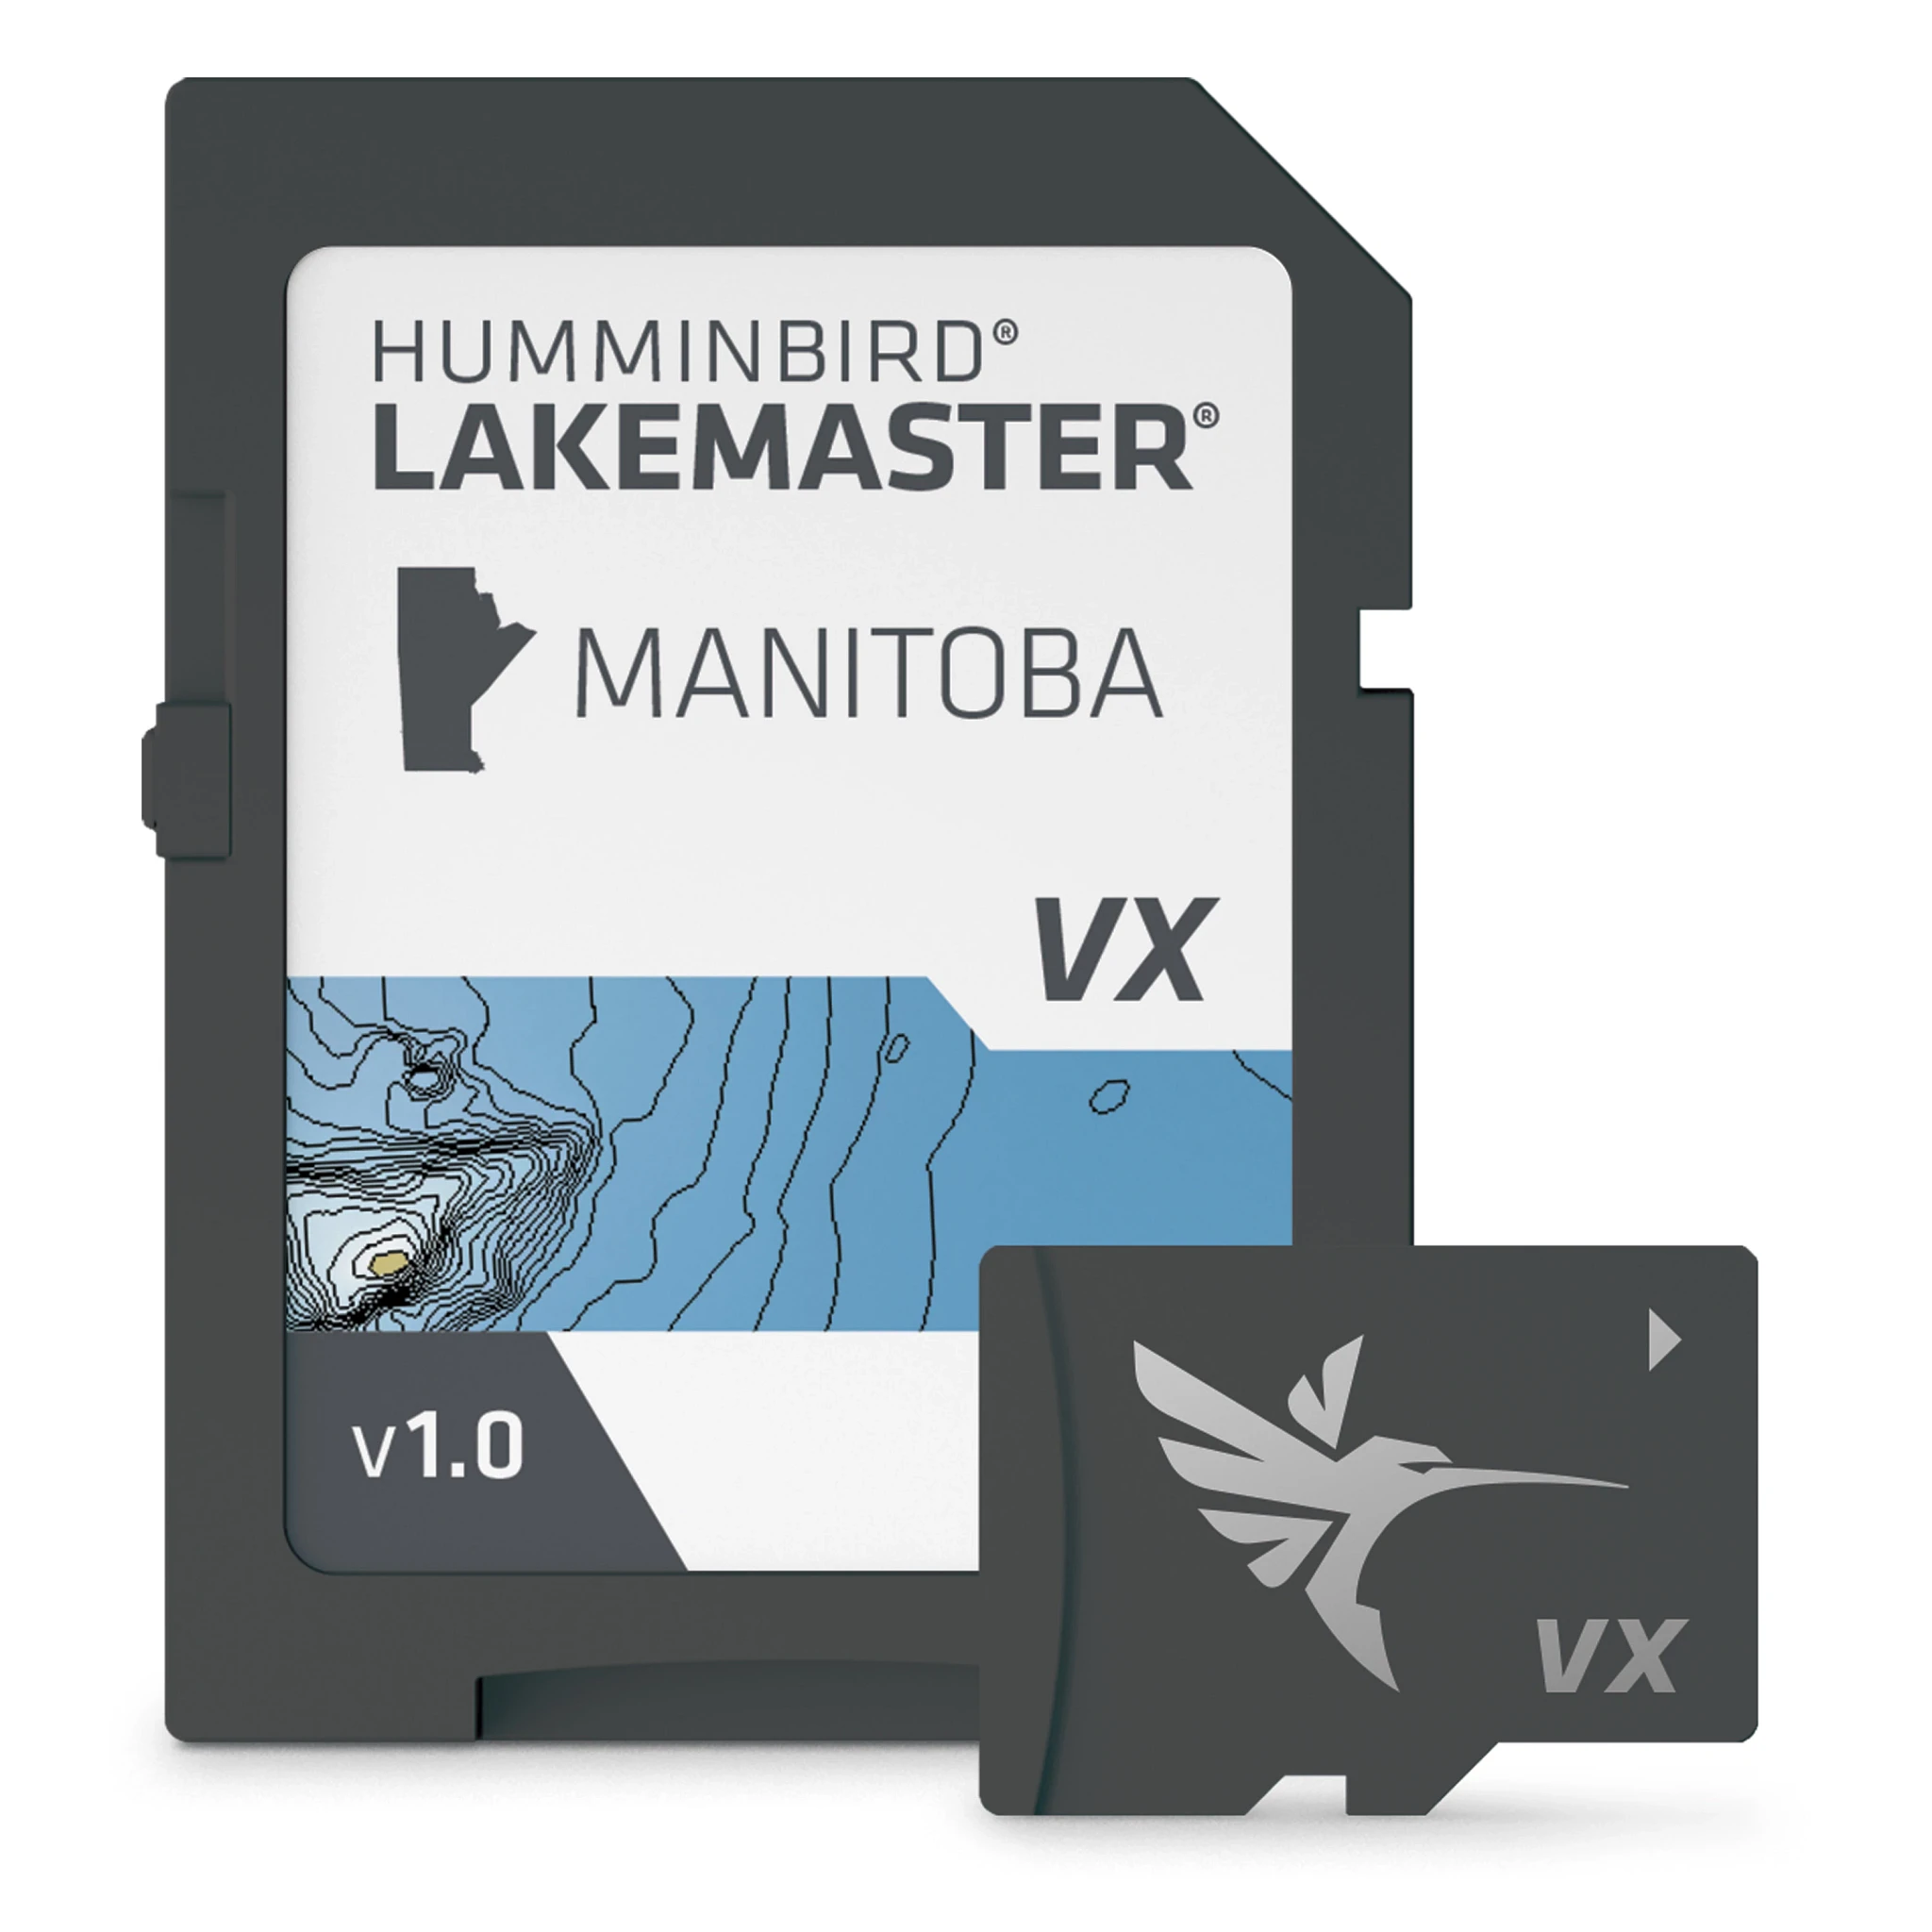 LakeMaster – Manitoba V1